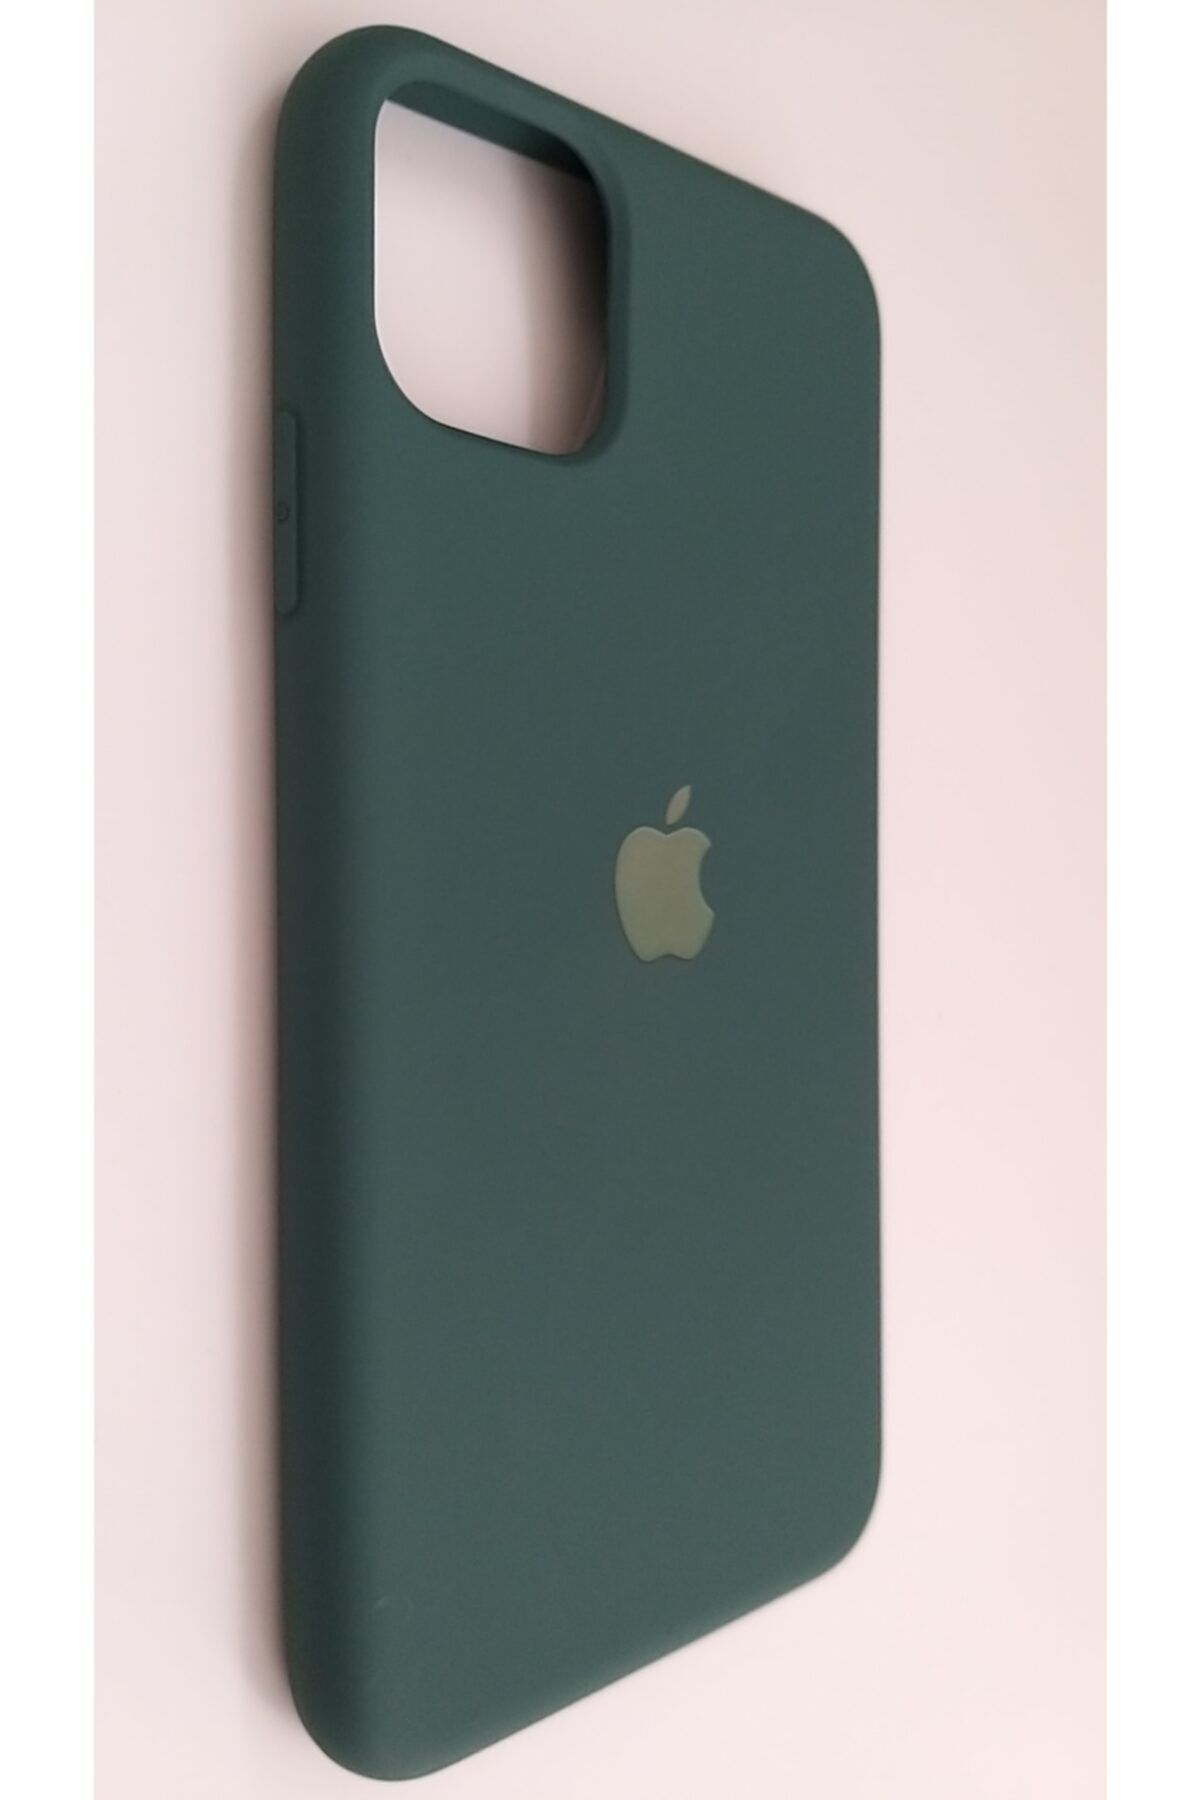 Pirok Store Iphone 11 Promax Haki Yeşil Lansman Silikon Kılıf Içi Kadife Logolu